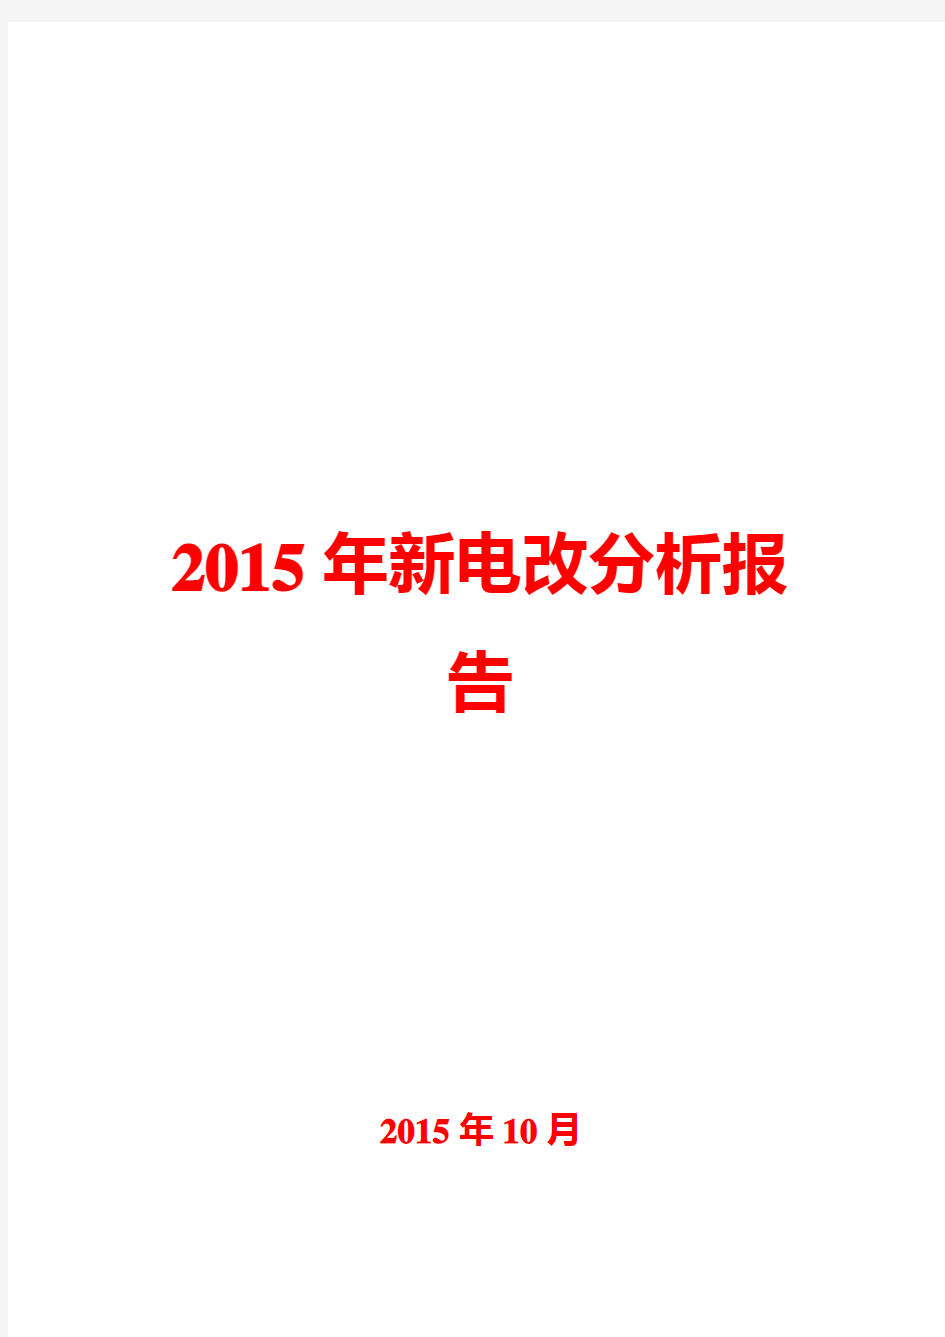 2015年新电改分析报告